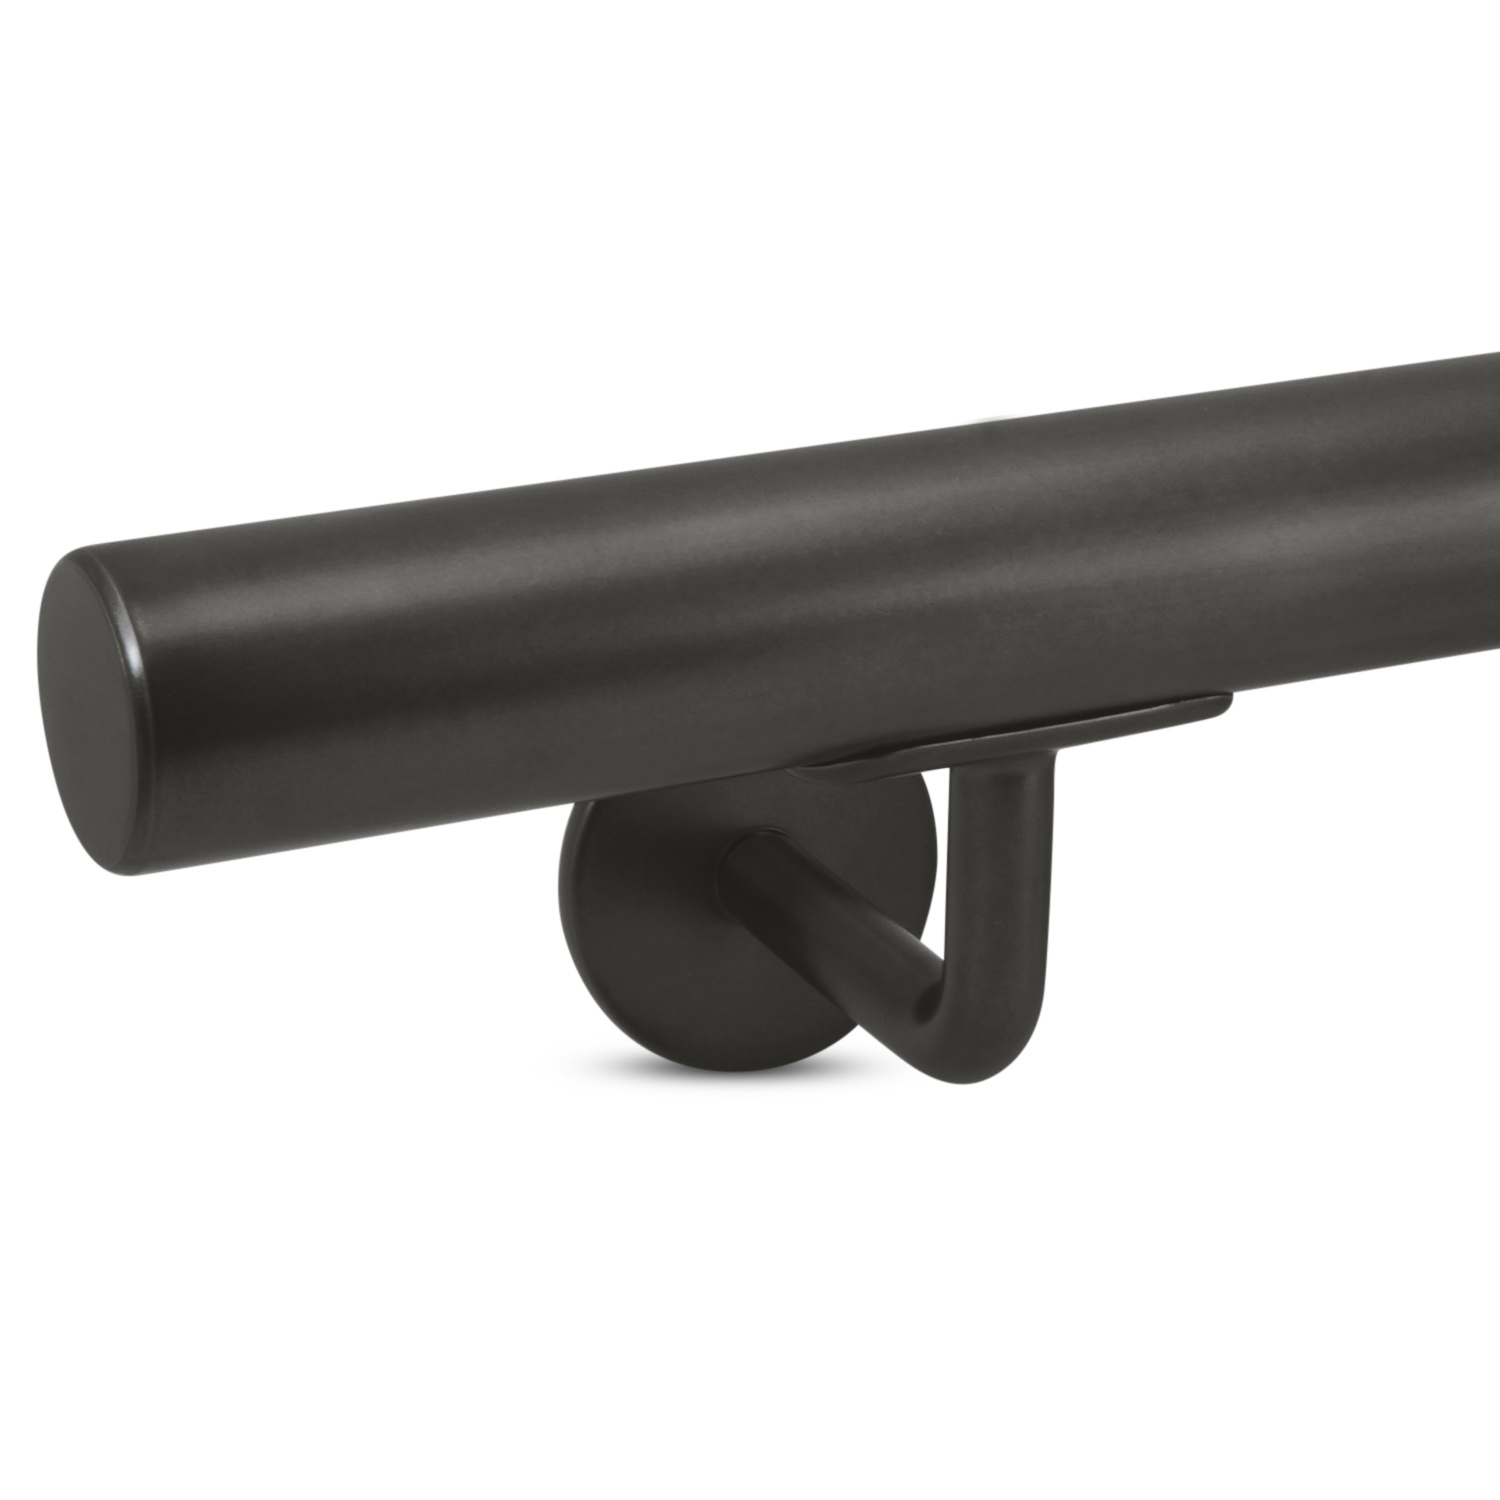  Handlauf Gunmetal Optik beschichtet rund Modell 3 - Runde Treppengeländer - Treppenhandlauf mit Gun Metal Look Pulverbeschichtung